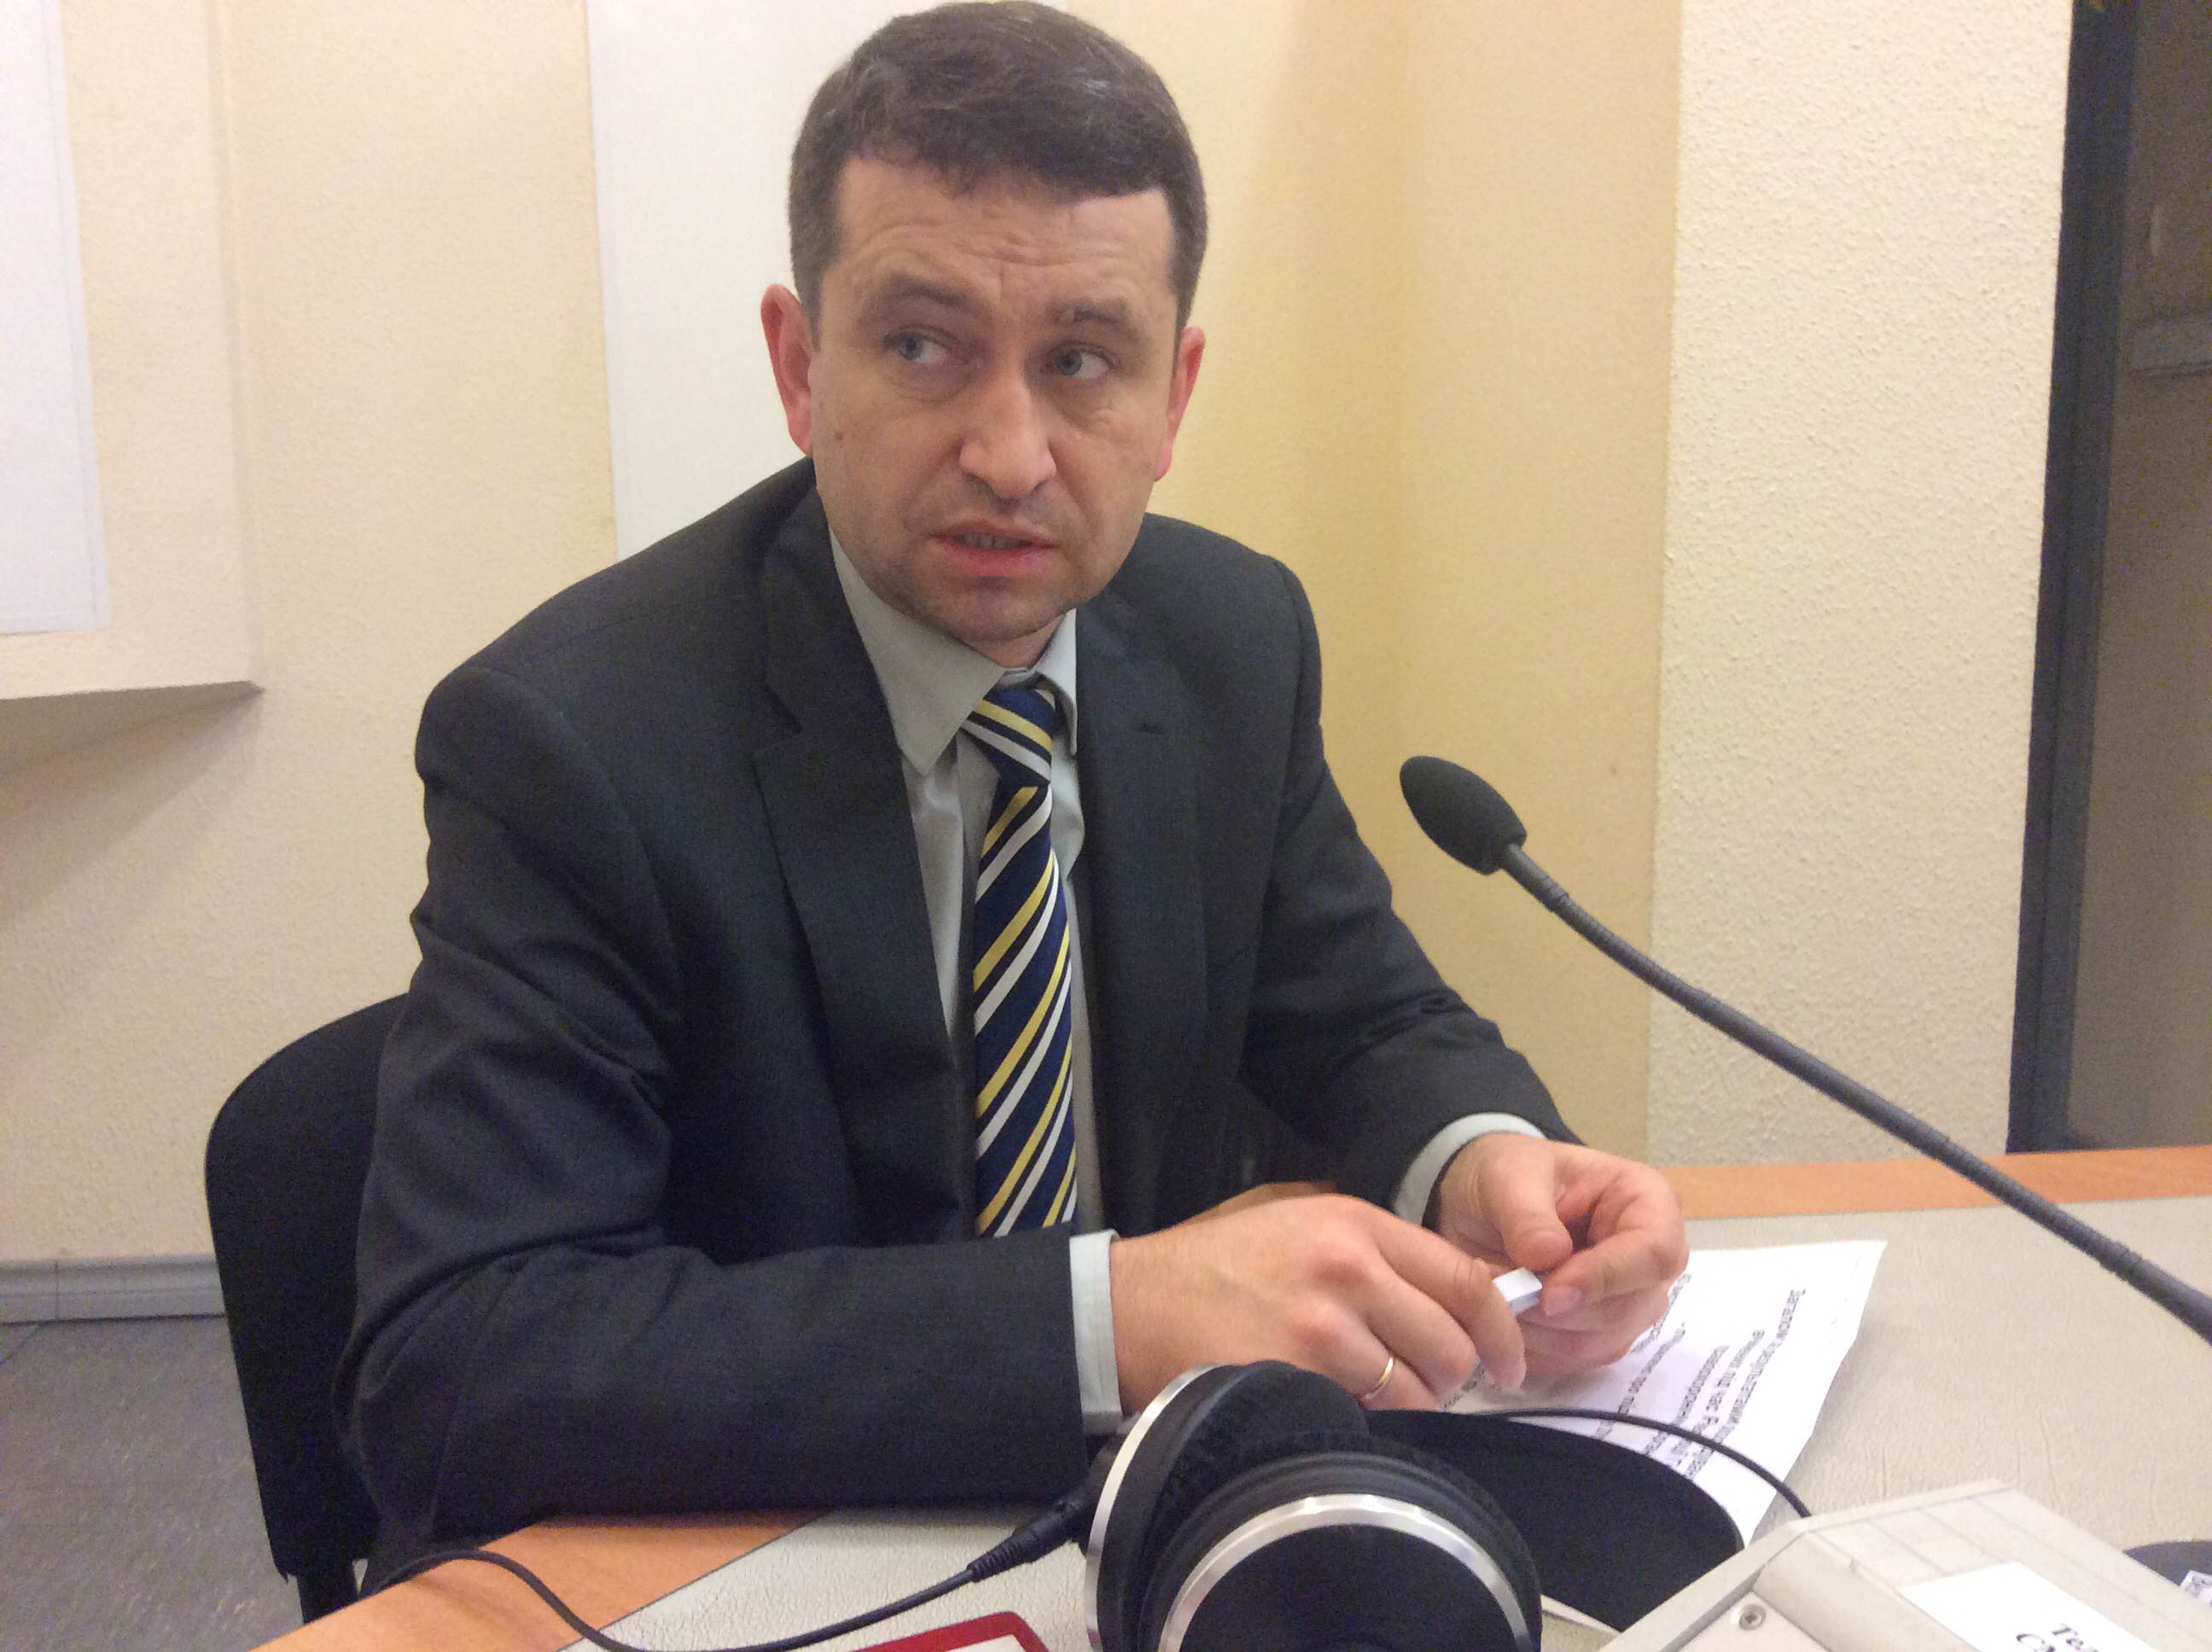 Політичної волі для розслідування справ Майдану у керівництва держави немає, — експерт